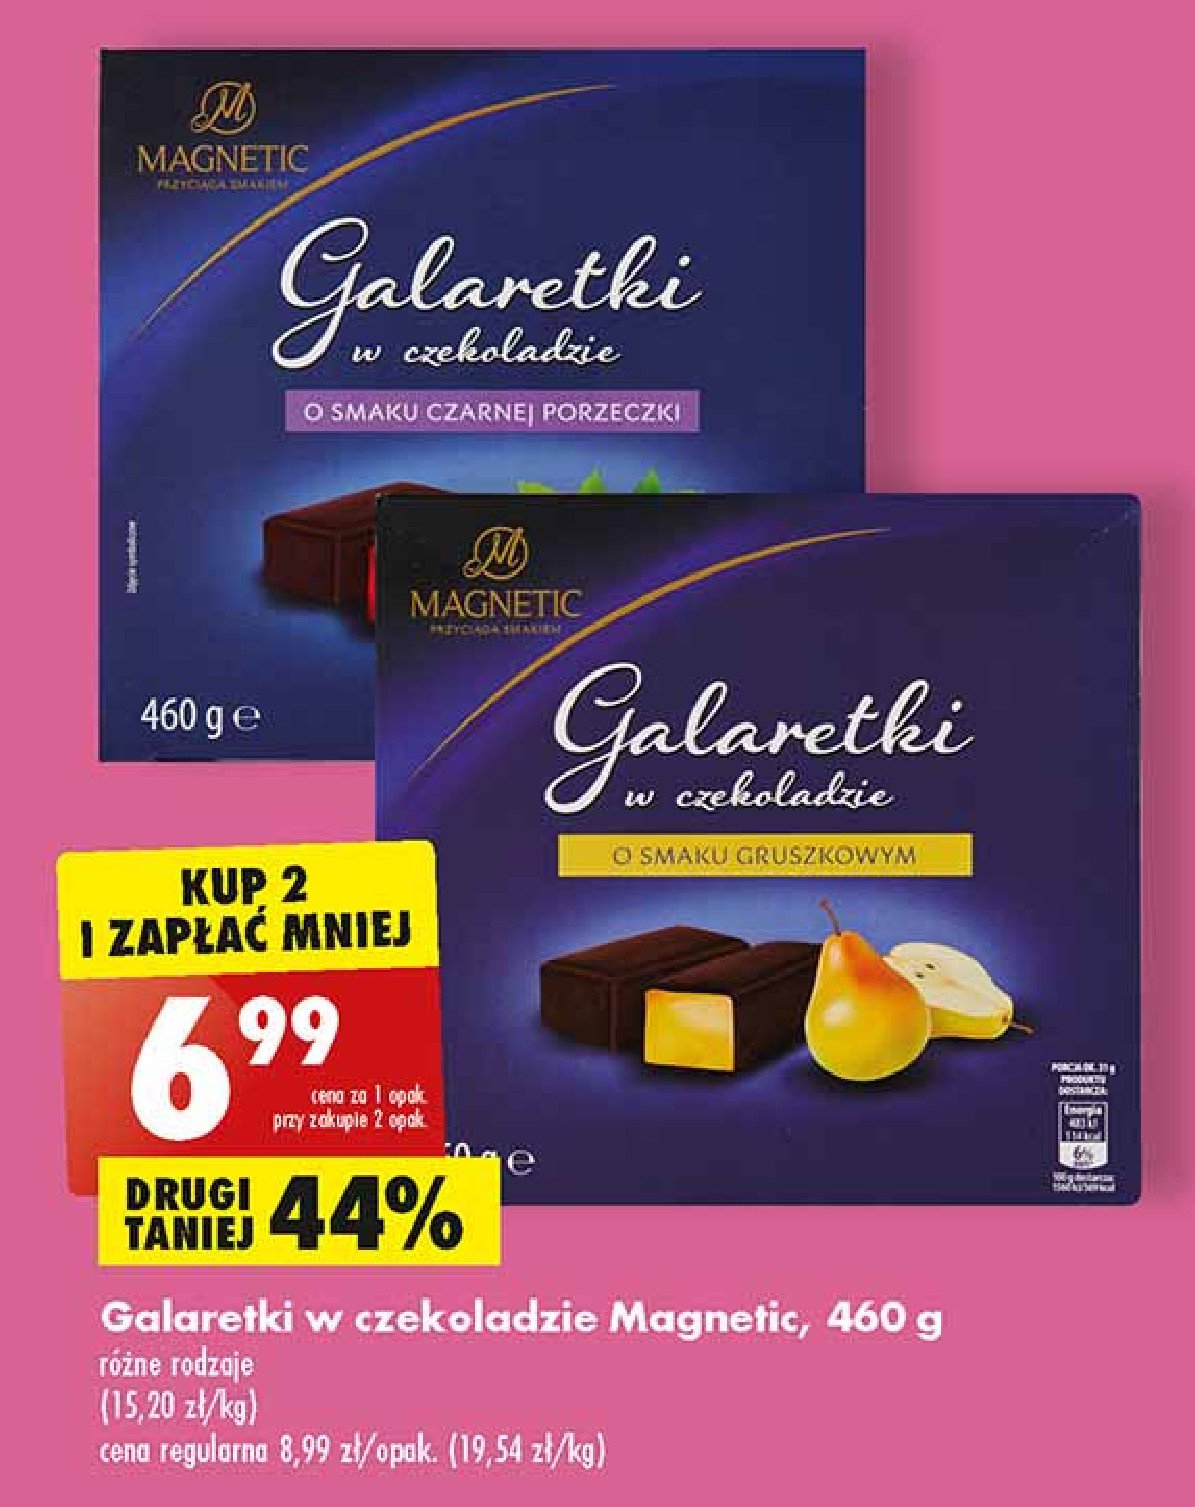 Galaretki o smaku czarnej porzeczki w czekoladzie Magnetic promocje